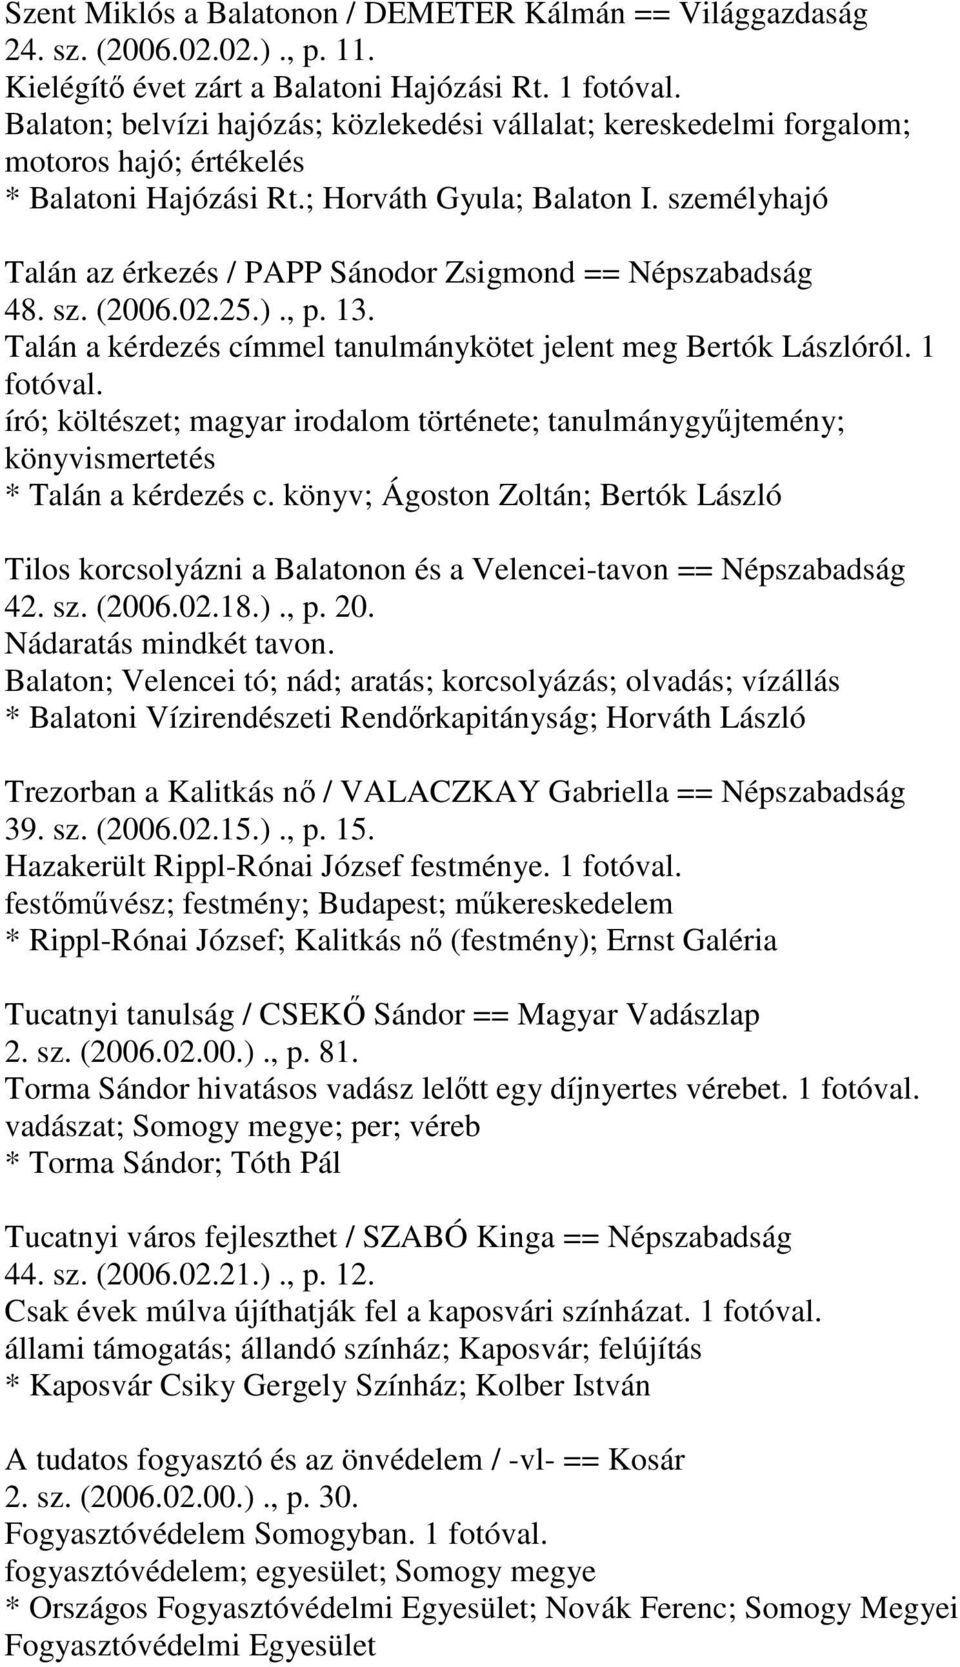 személyhajó Talán az érkezés / PAPP Sánodor Zsigmond == Népszabadság 48. sz. (2006.02.25.)., p. 13. Talán a kérdezés címmel tanulmánykötet jelent meg Bertók Lászlóról. 1 fotóval.